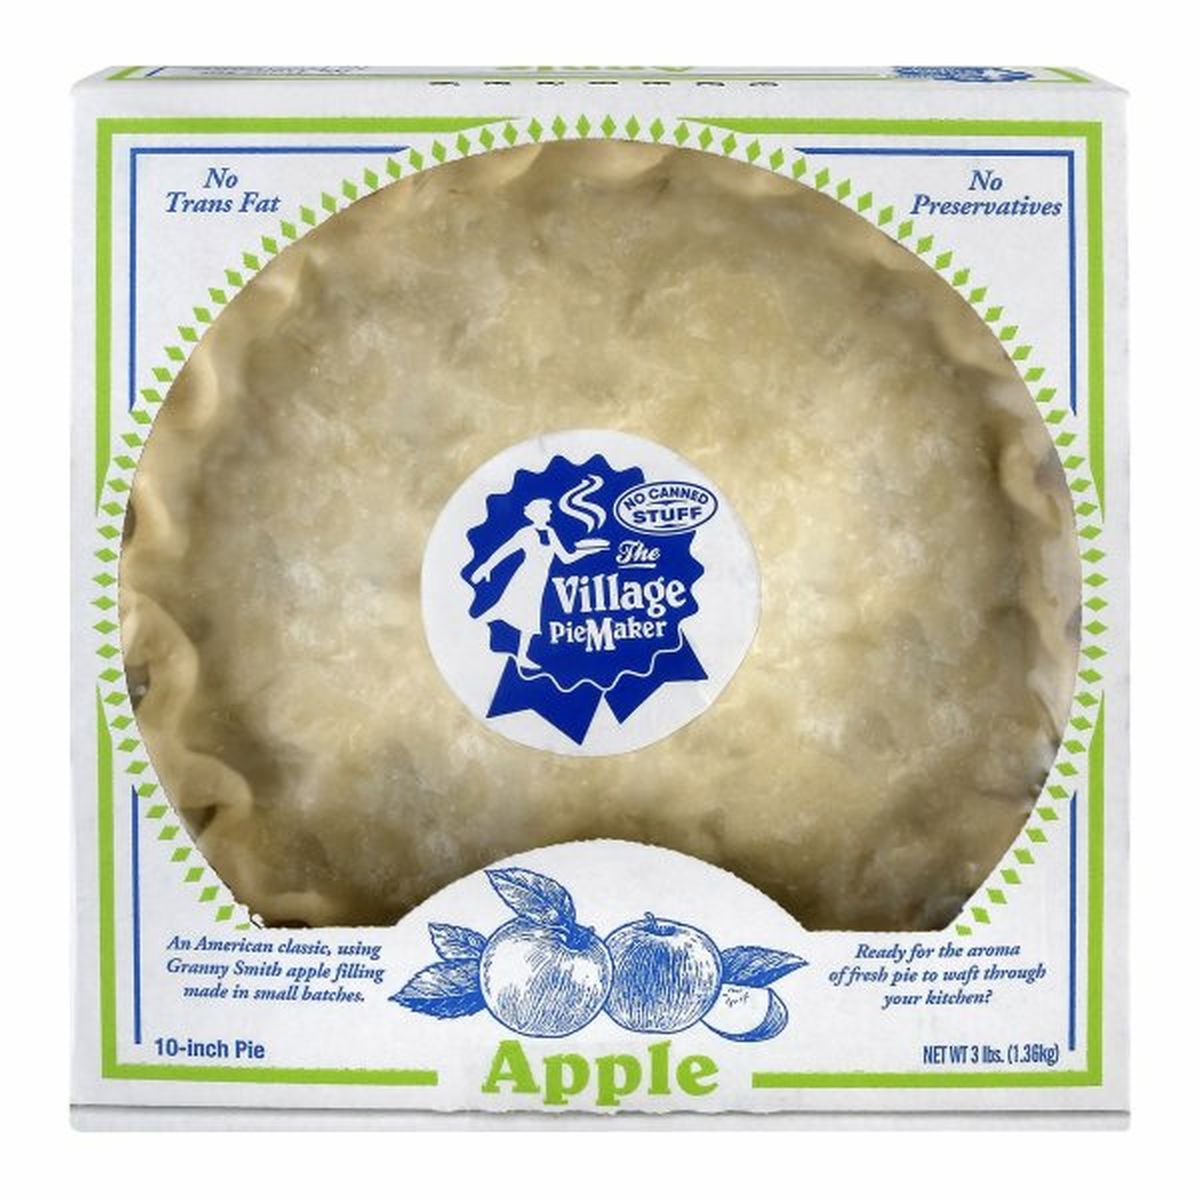 Calories in Village PieMaker Pie, Apple, 10-Inch